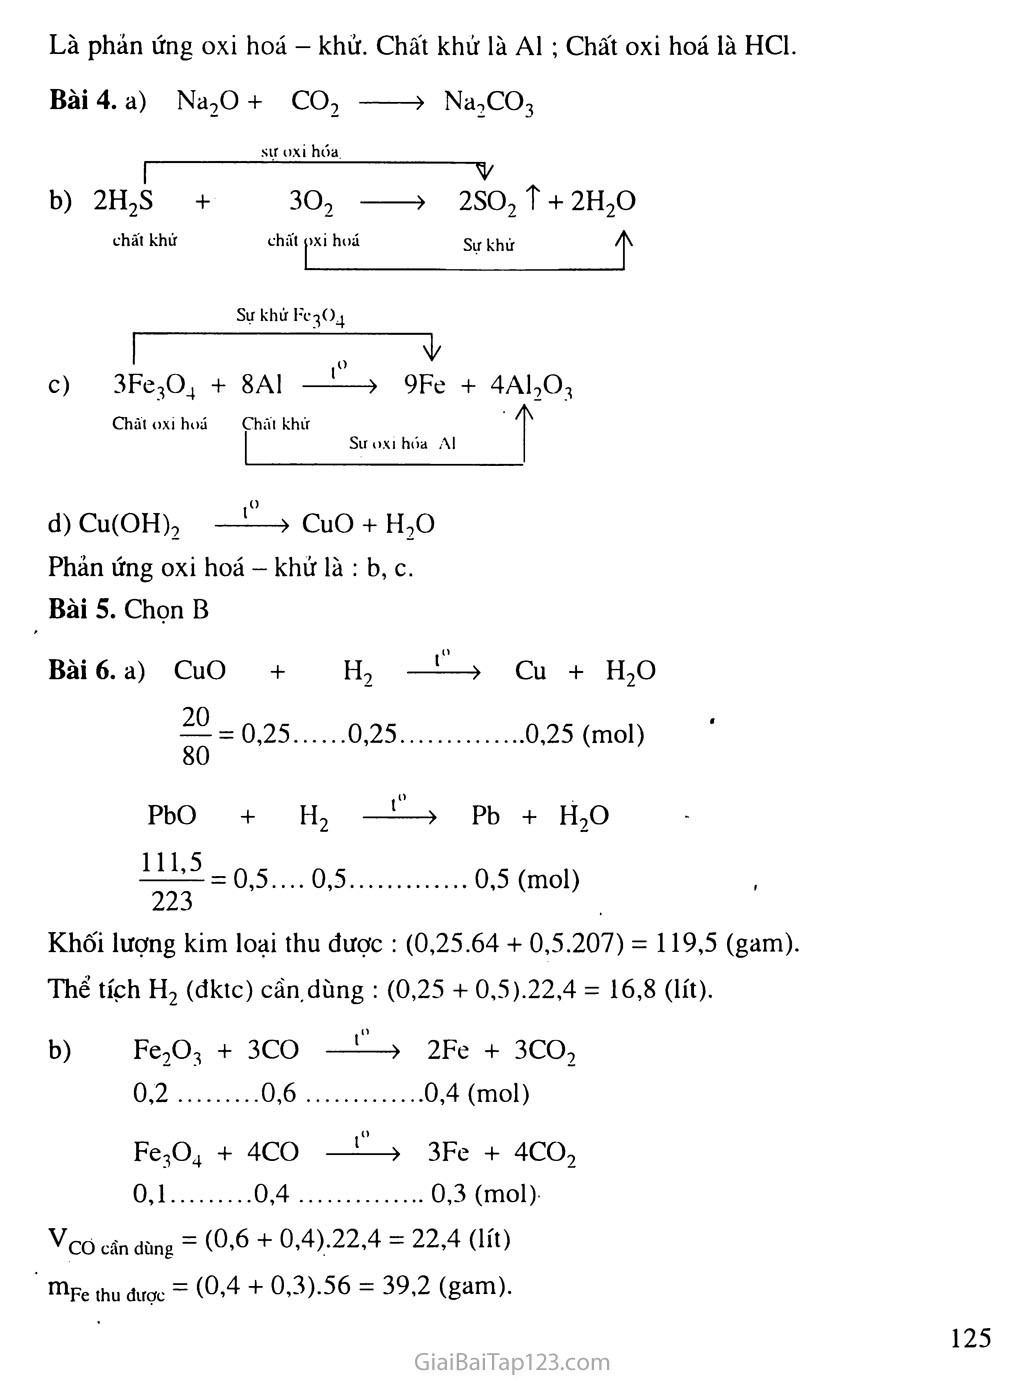 Bài 32: Phản ứng oxi hóa - khử trang 5